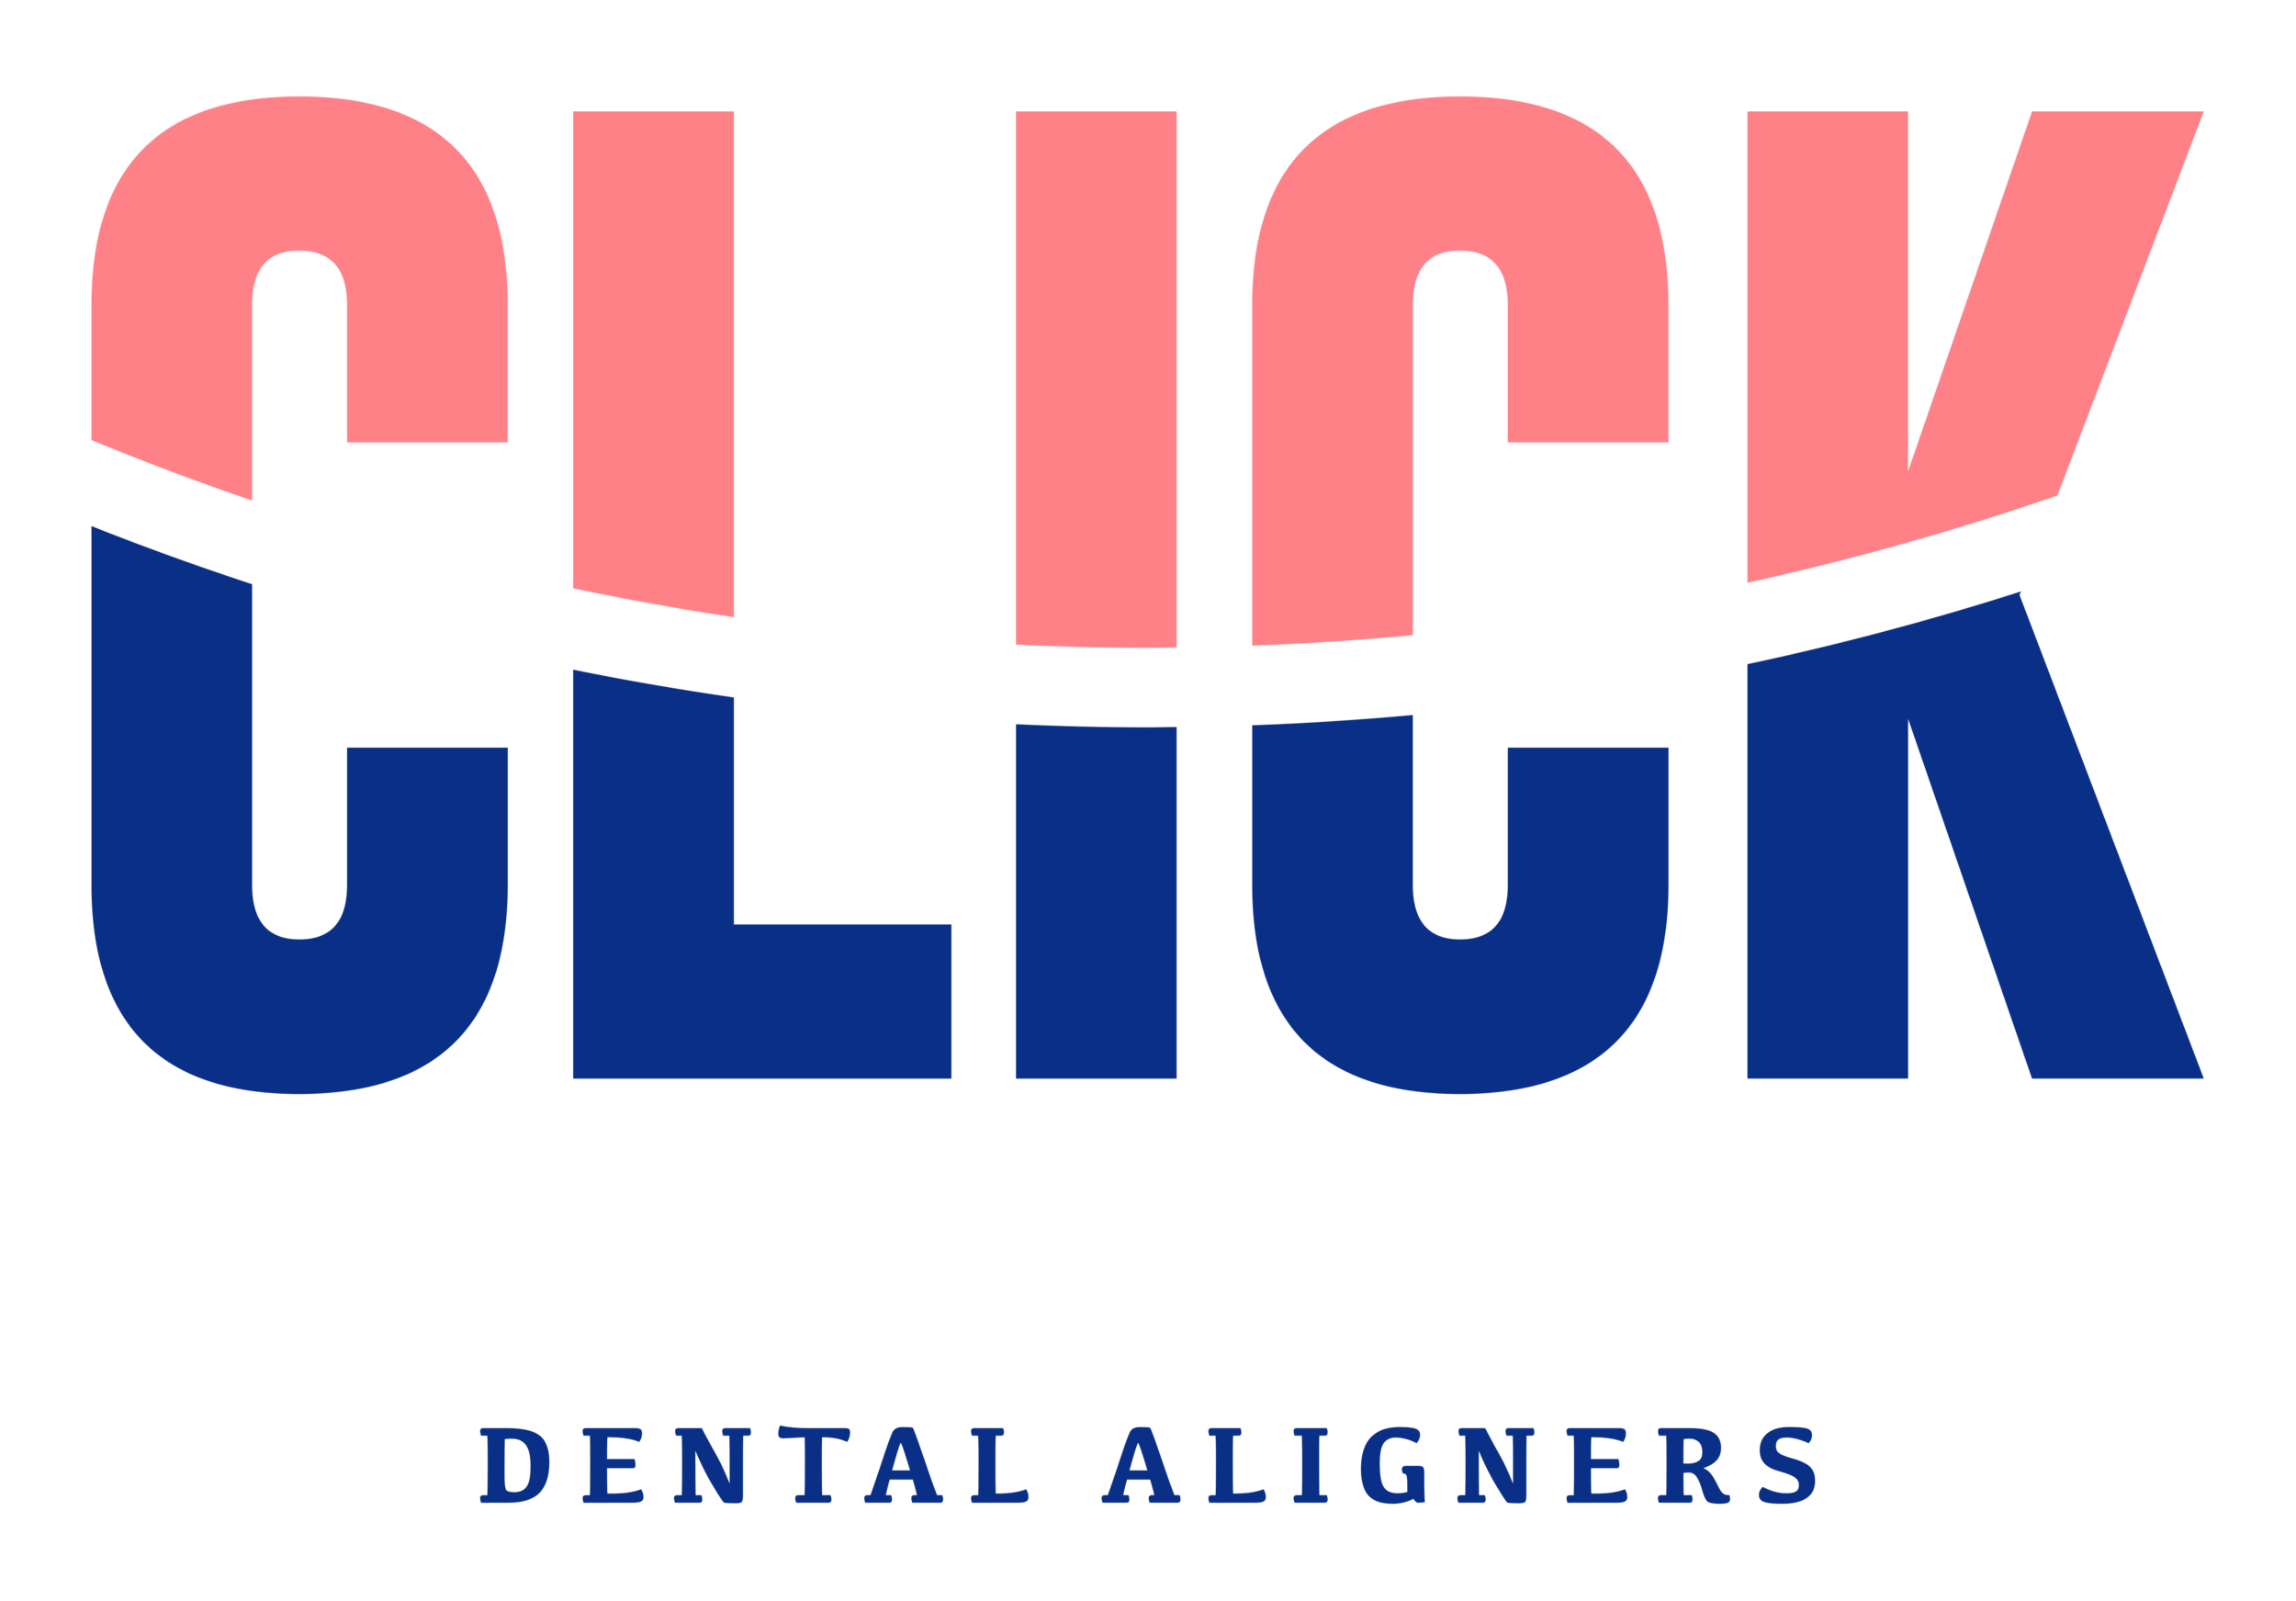 Click Dental Aligners